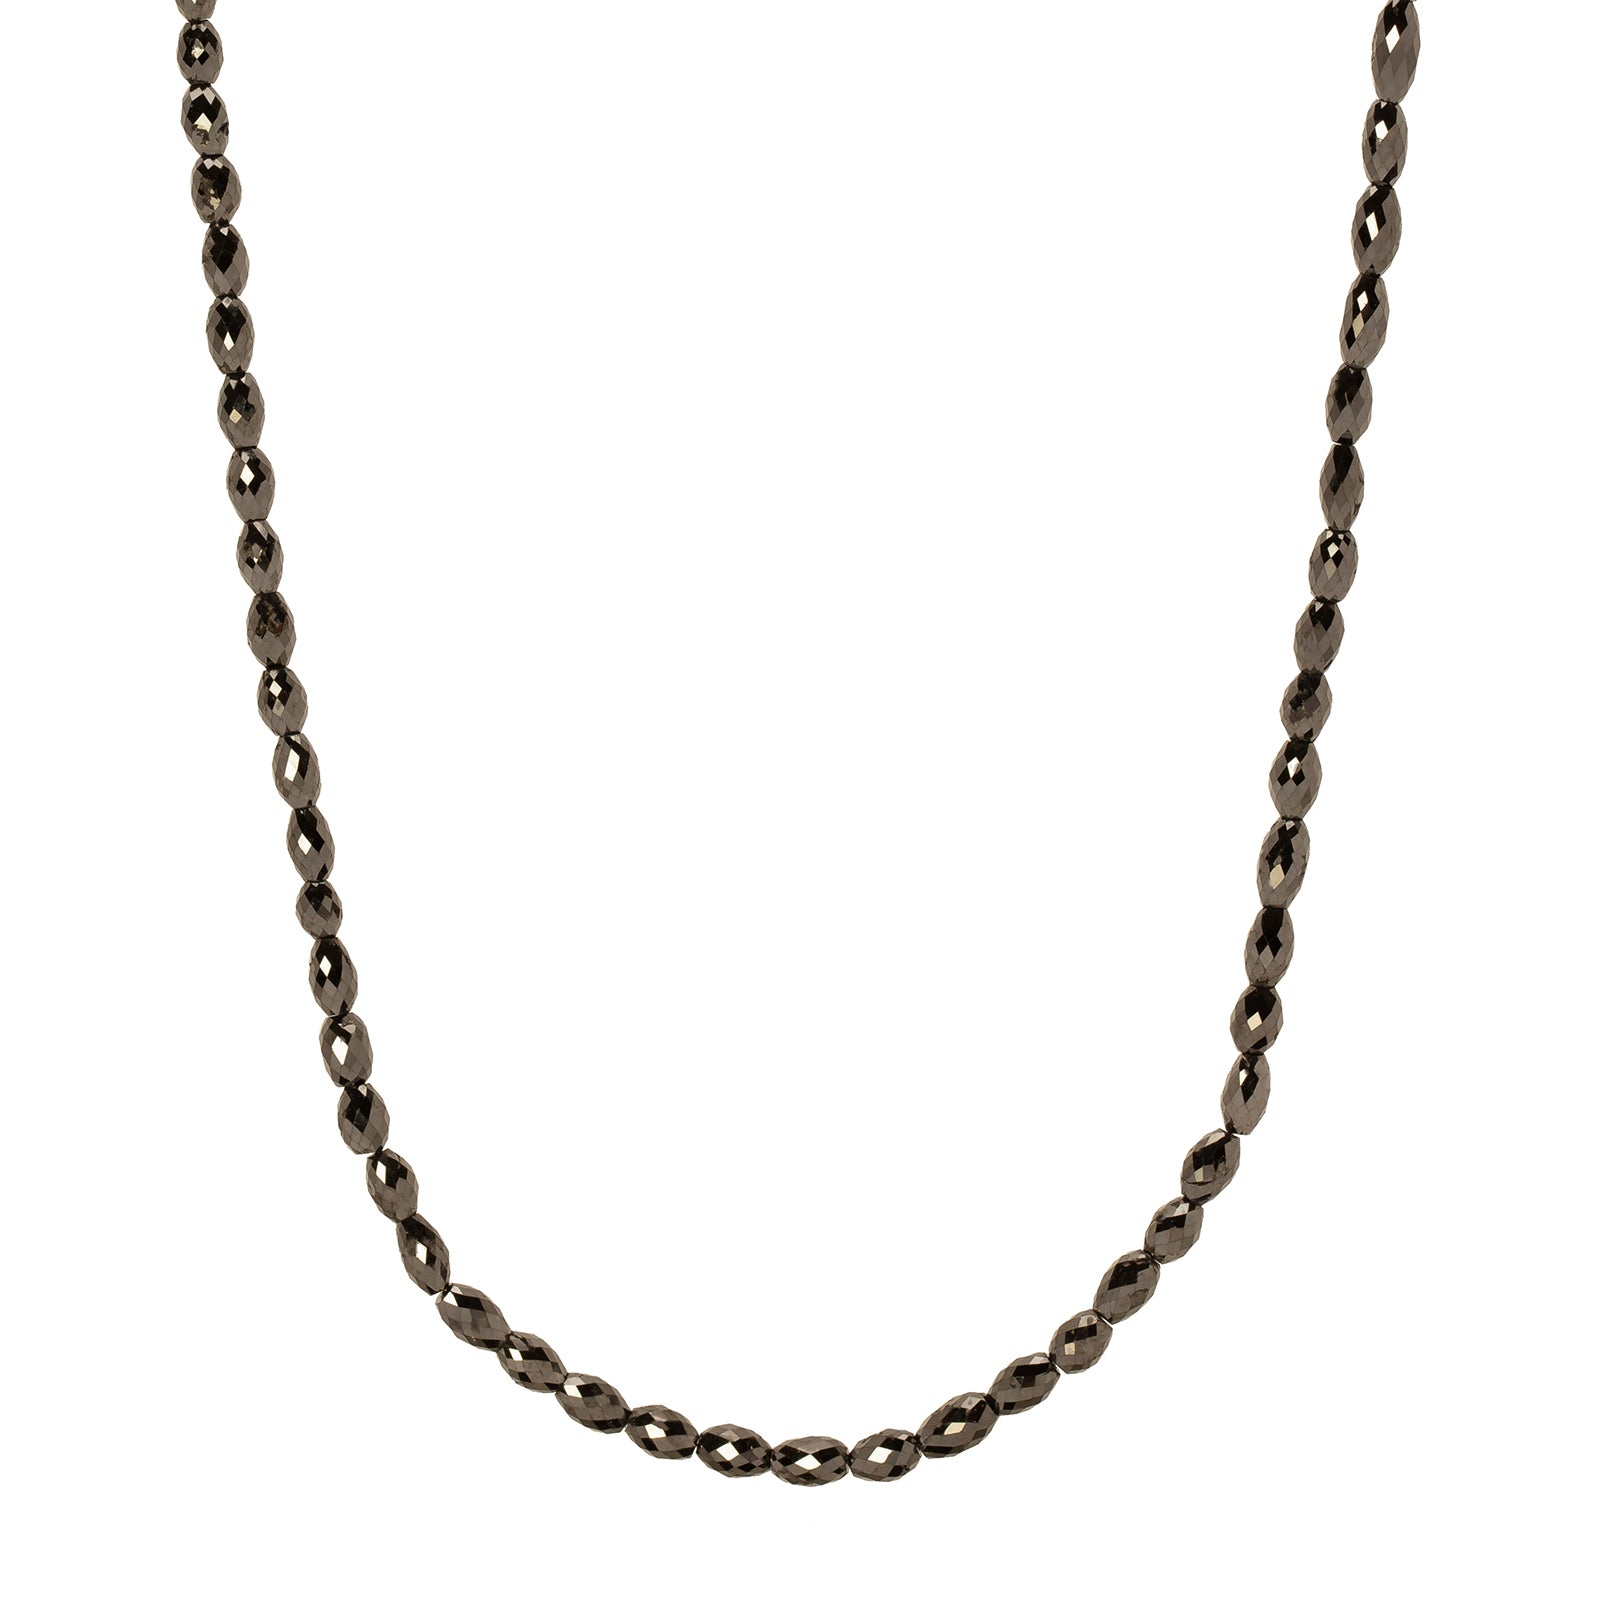 Briollet Black Diamond Necklace